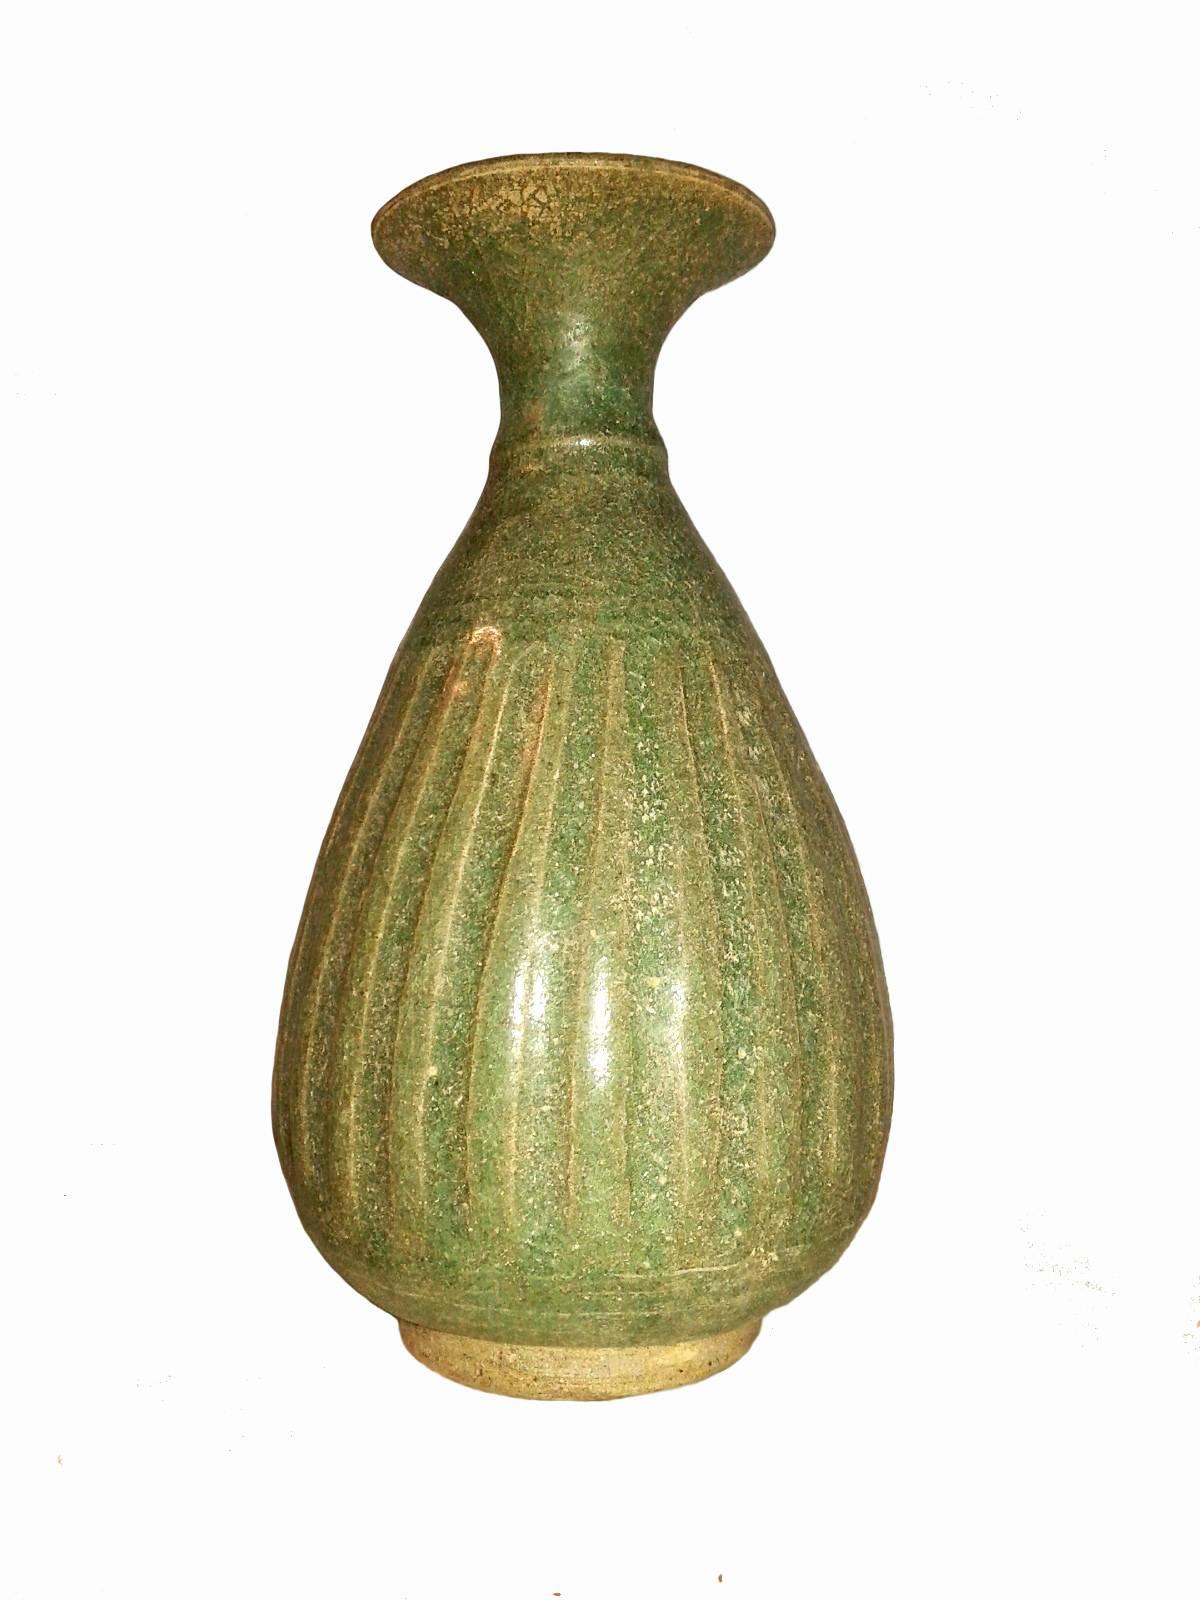 Glazed Selection of Thai Ceramic Vases